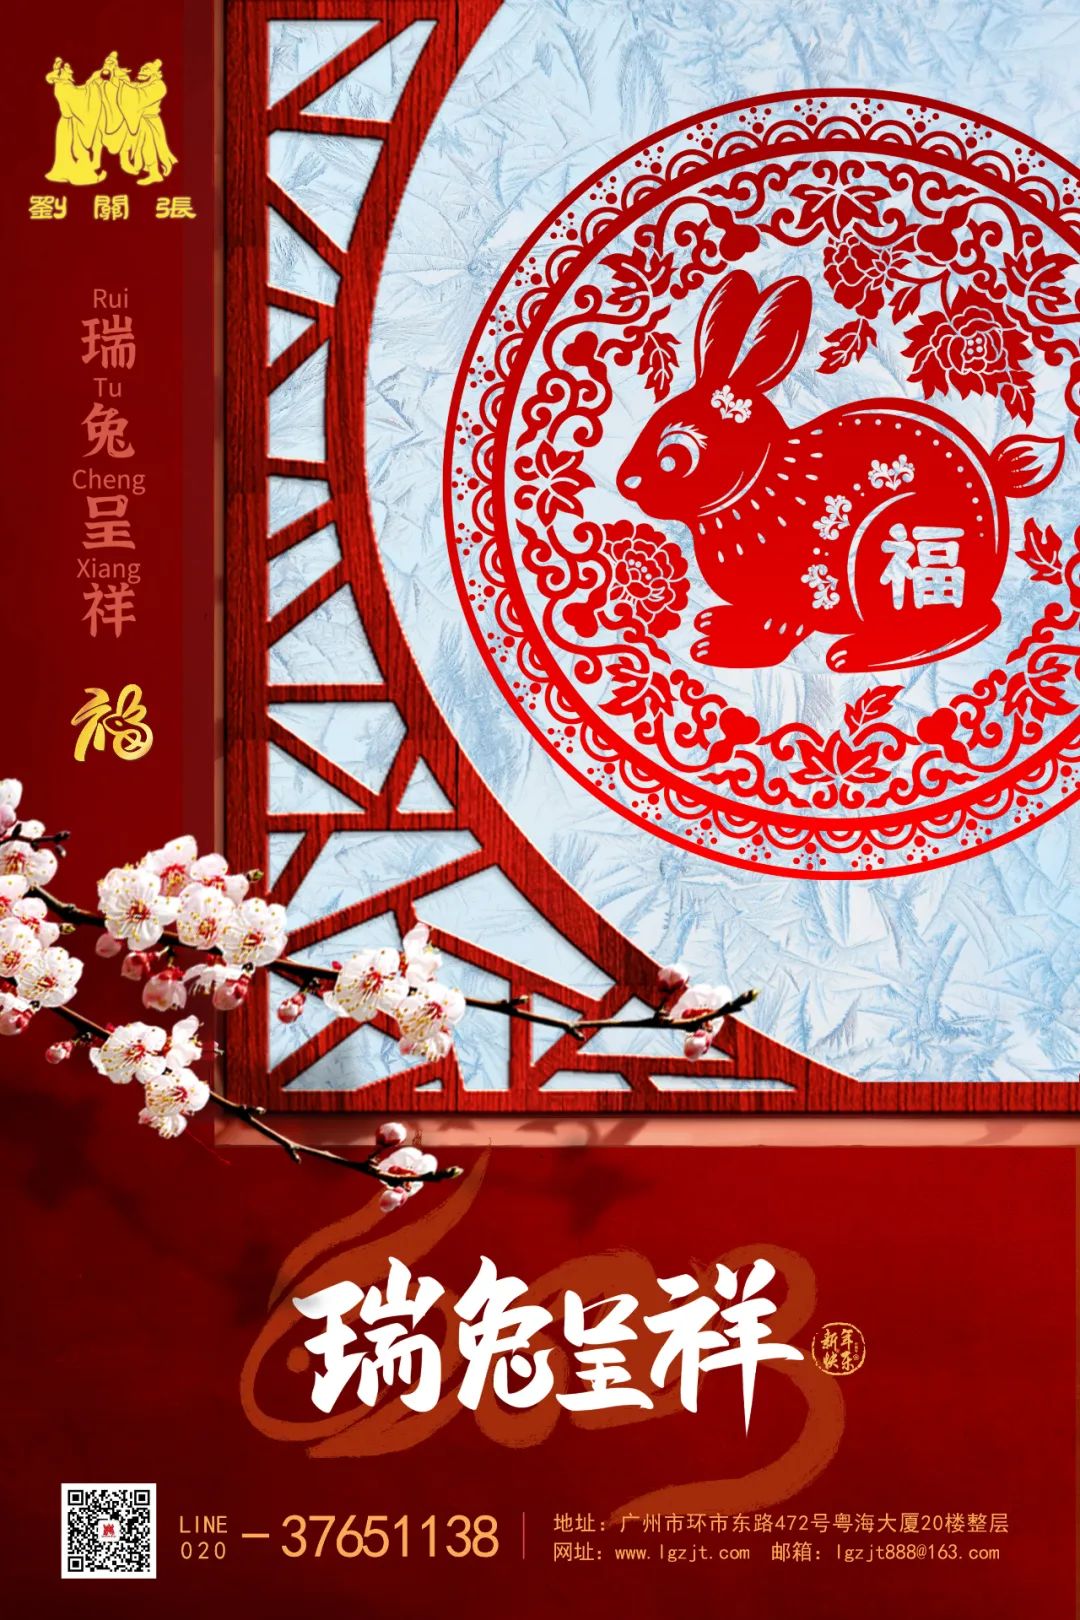 拜年啦！廣州劉關張集團恭祝大家新春快樂！